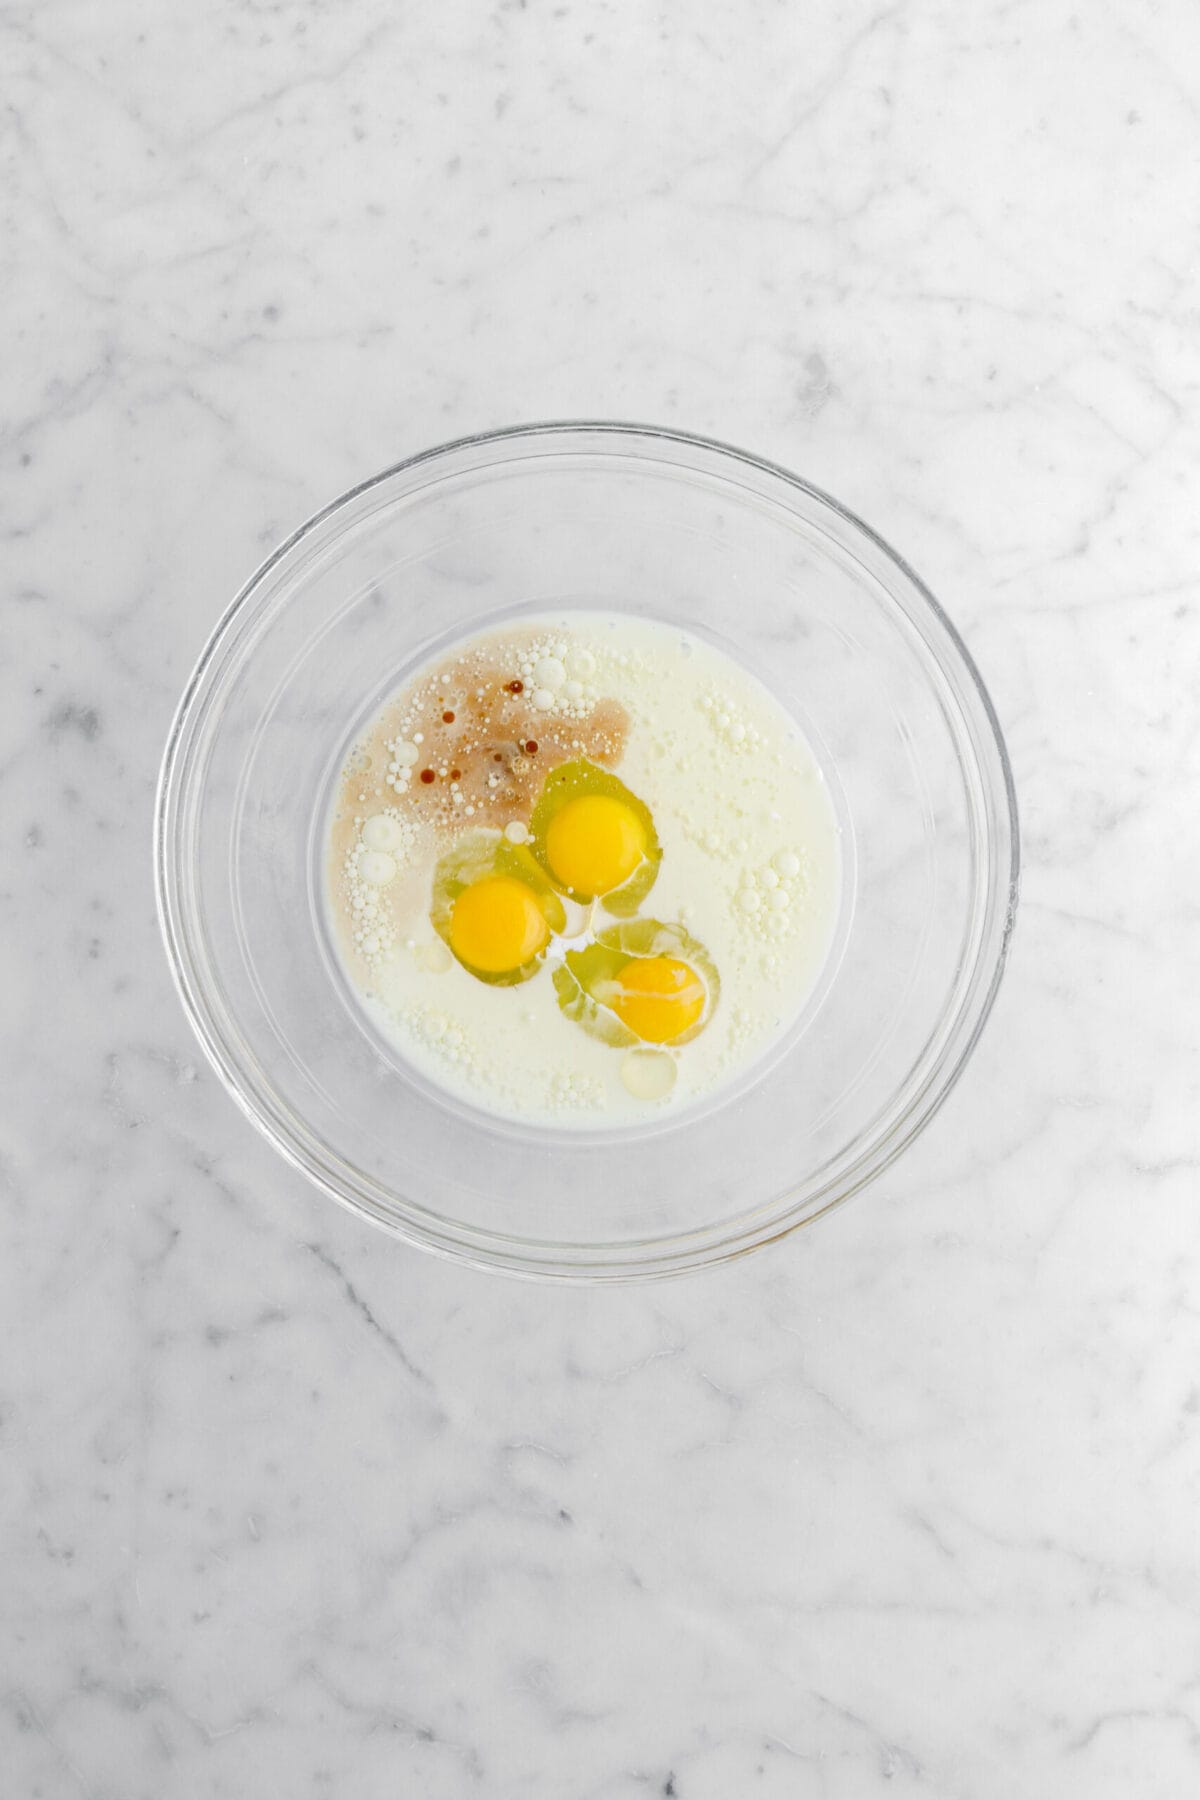 eggs, milk, oil, and vanilla in glass bowl.